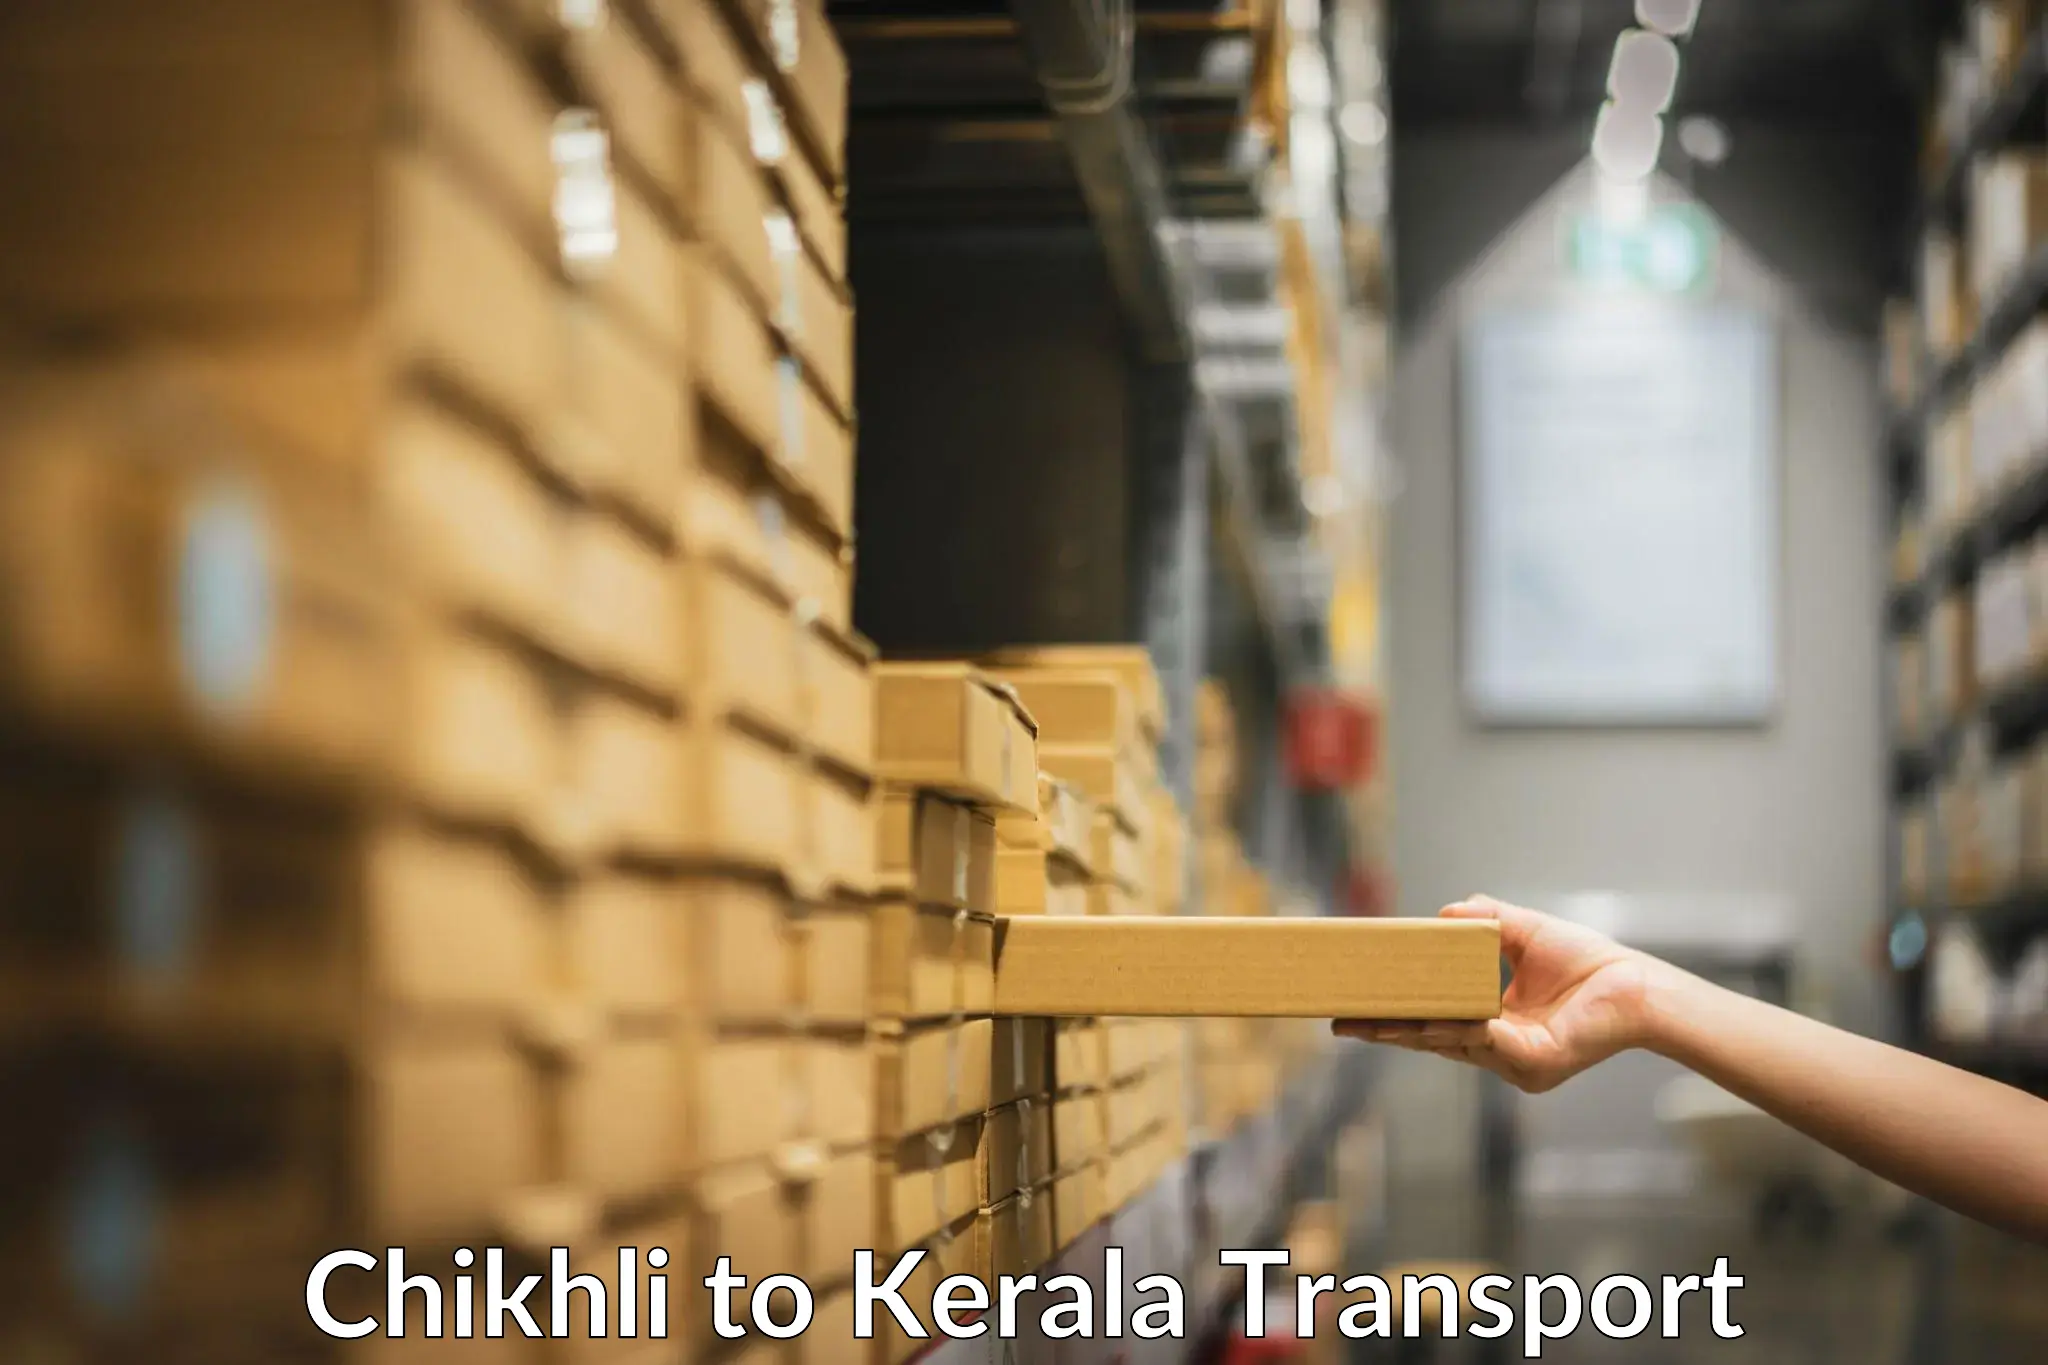 Intercity transport Chikhli to Thiruvananthapuram